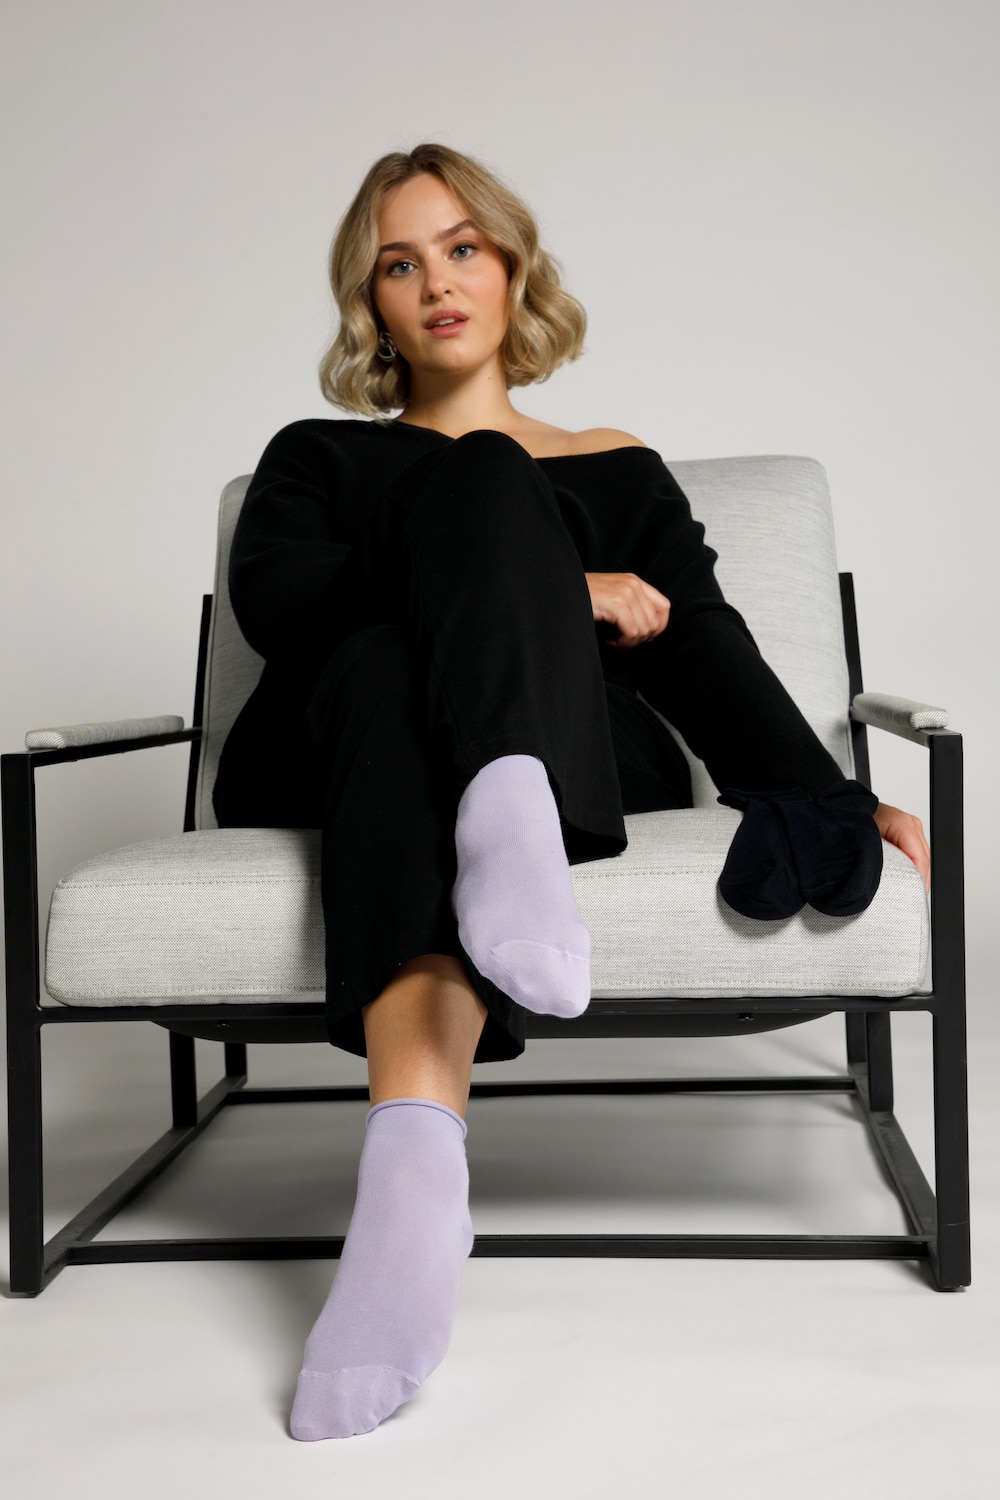 Plus Size 2 Pack of Roll Top Stretch Socks, Woman, purple, size: 4.5-6.5, cotton/synthetic fibers, Ulla Popken